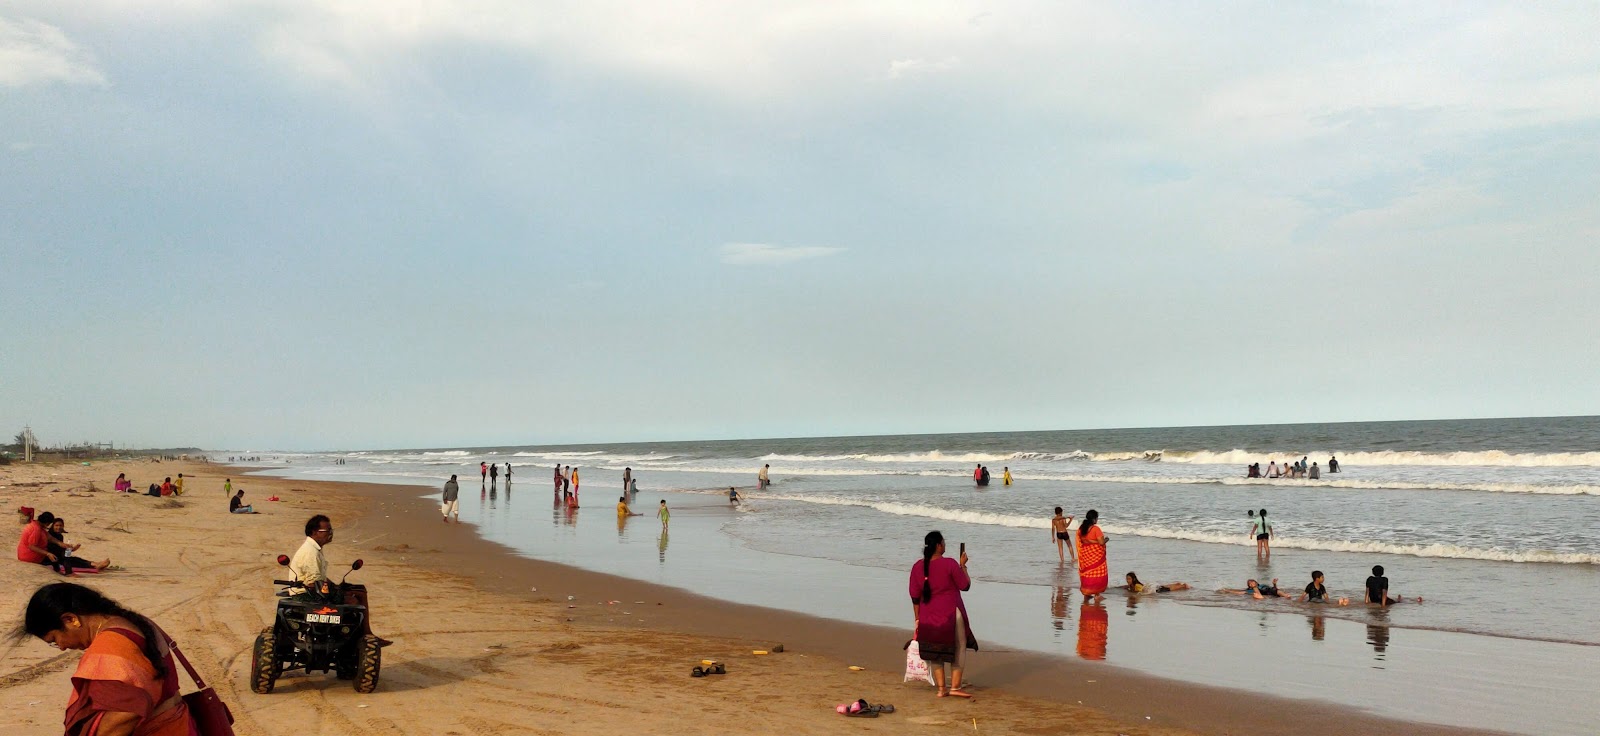 Foto av Ramapuram Shootout Beach med lång rak strand